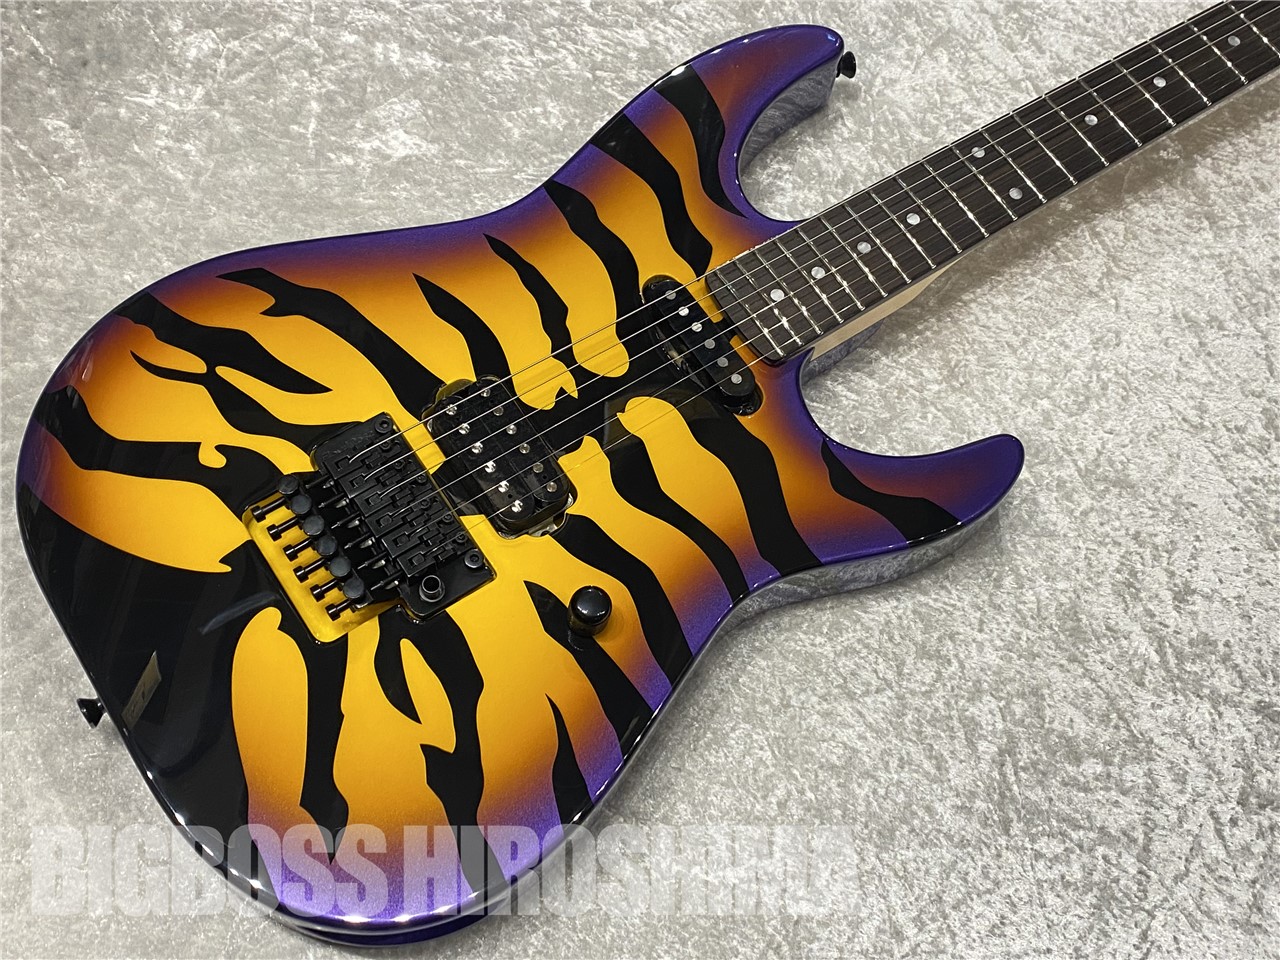 【即納可能】EDWARDS(エドワーズ) E-PURPLE TIGER (Purple Sunburst Tiger Graphic) (DOKKEN/George Lynchモデル) 広島店